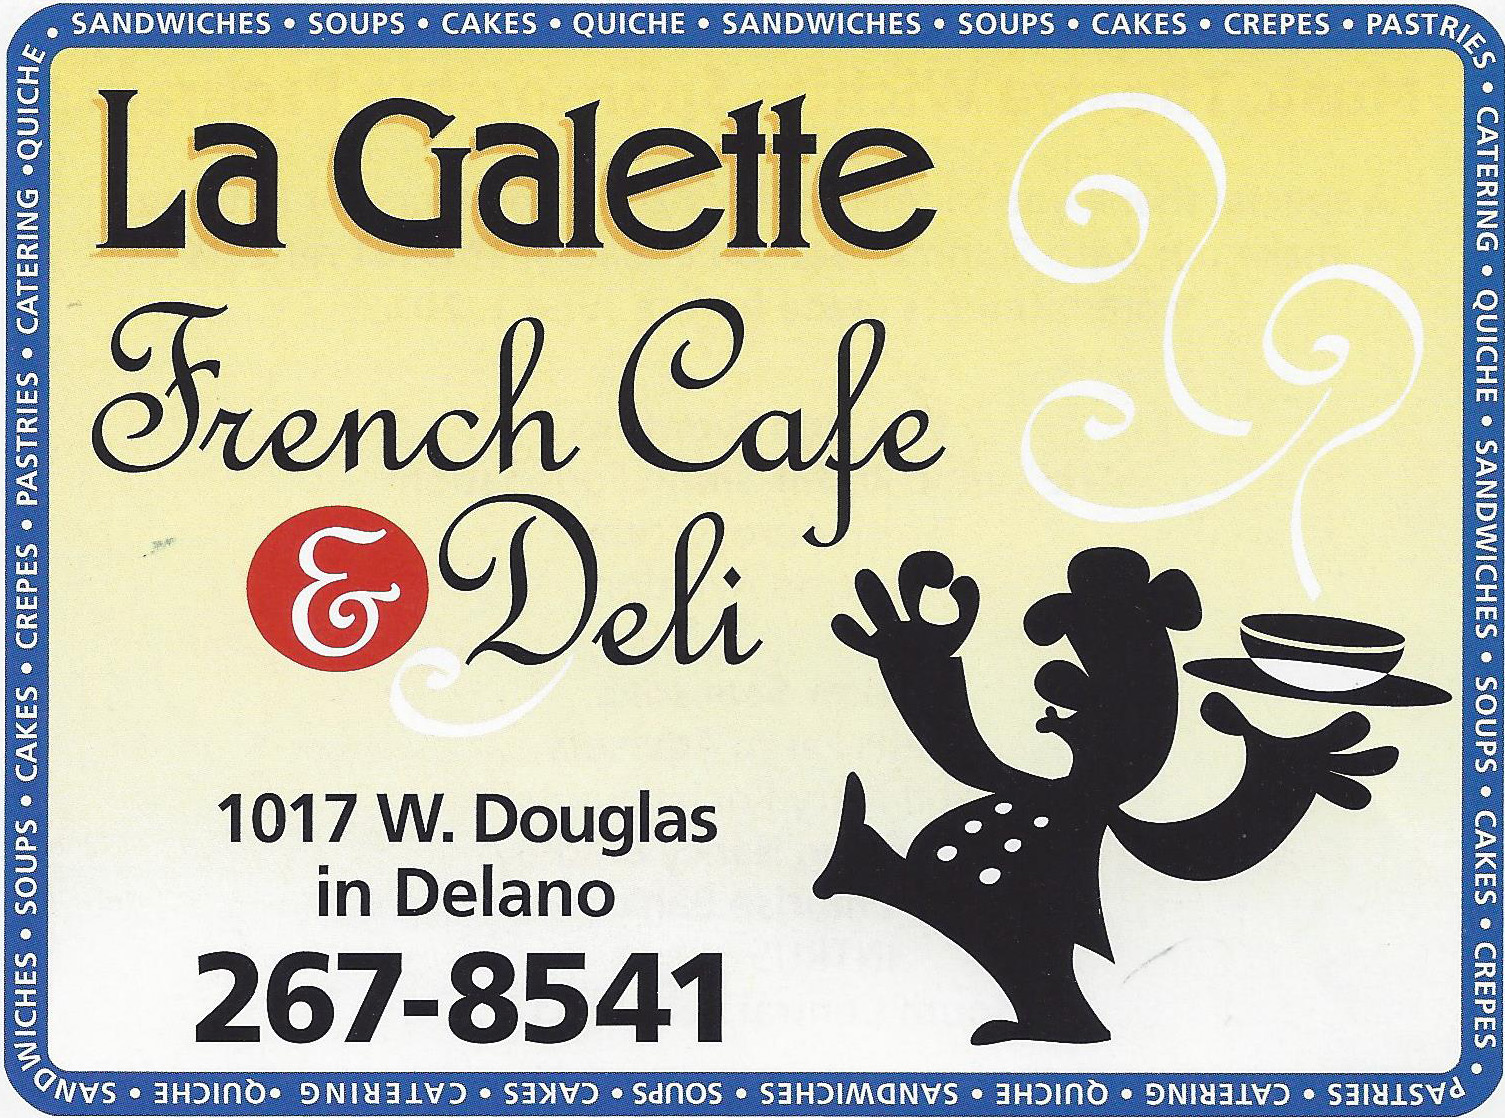 La Galette gives Wichita a little taste of France